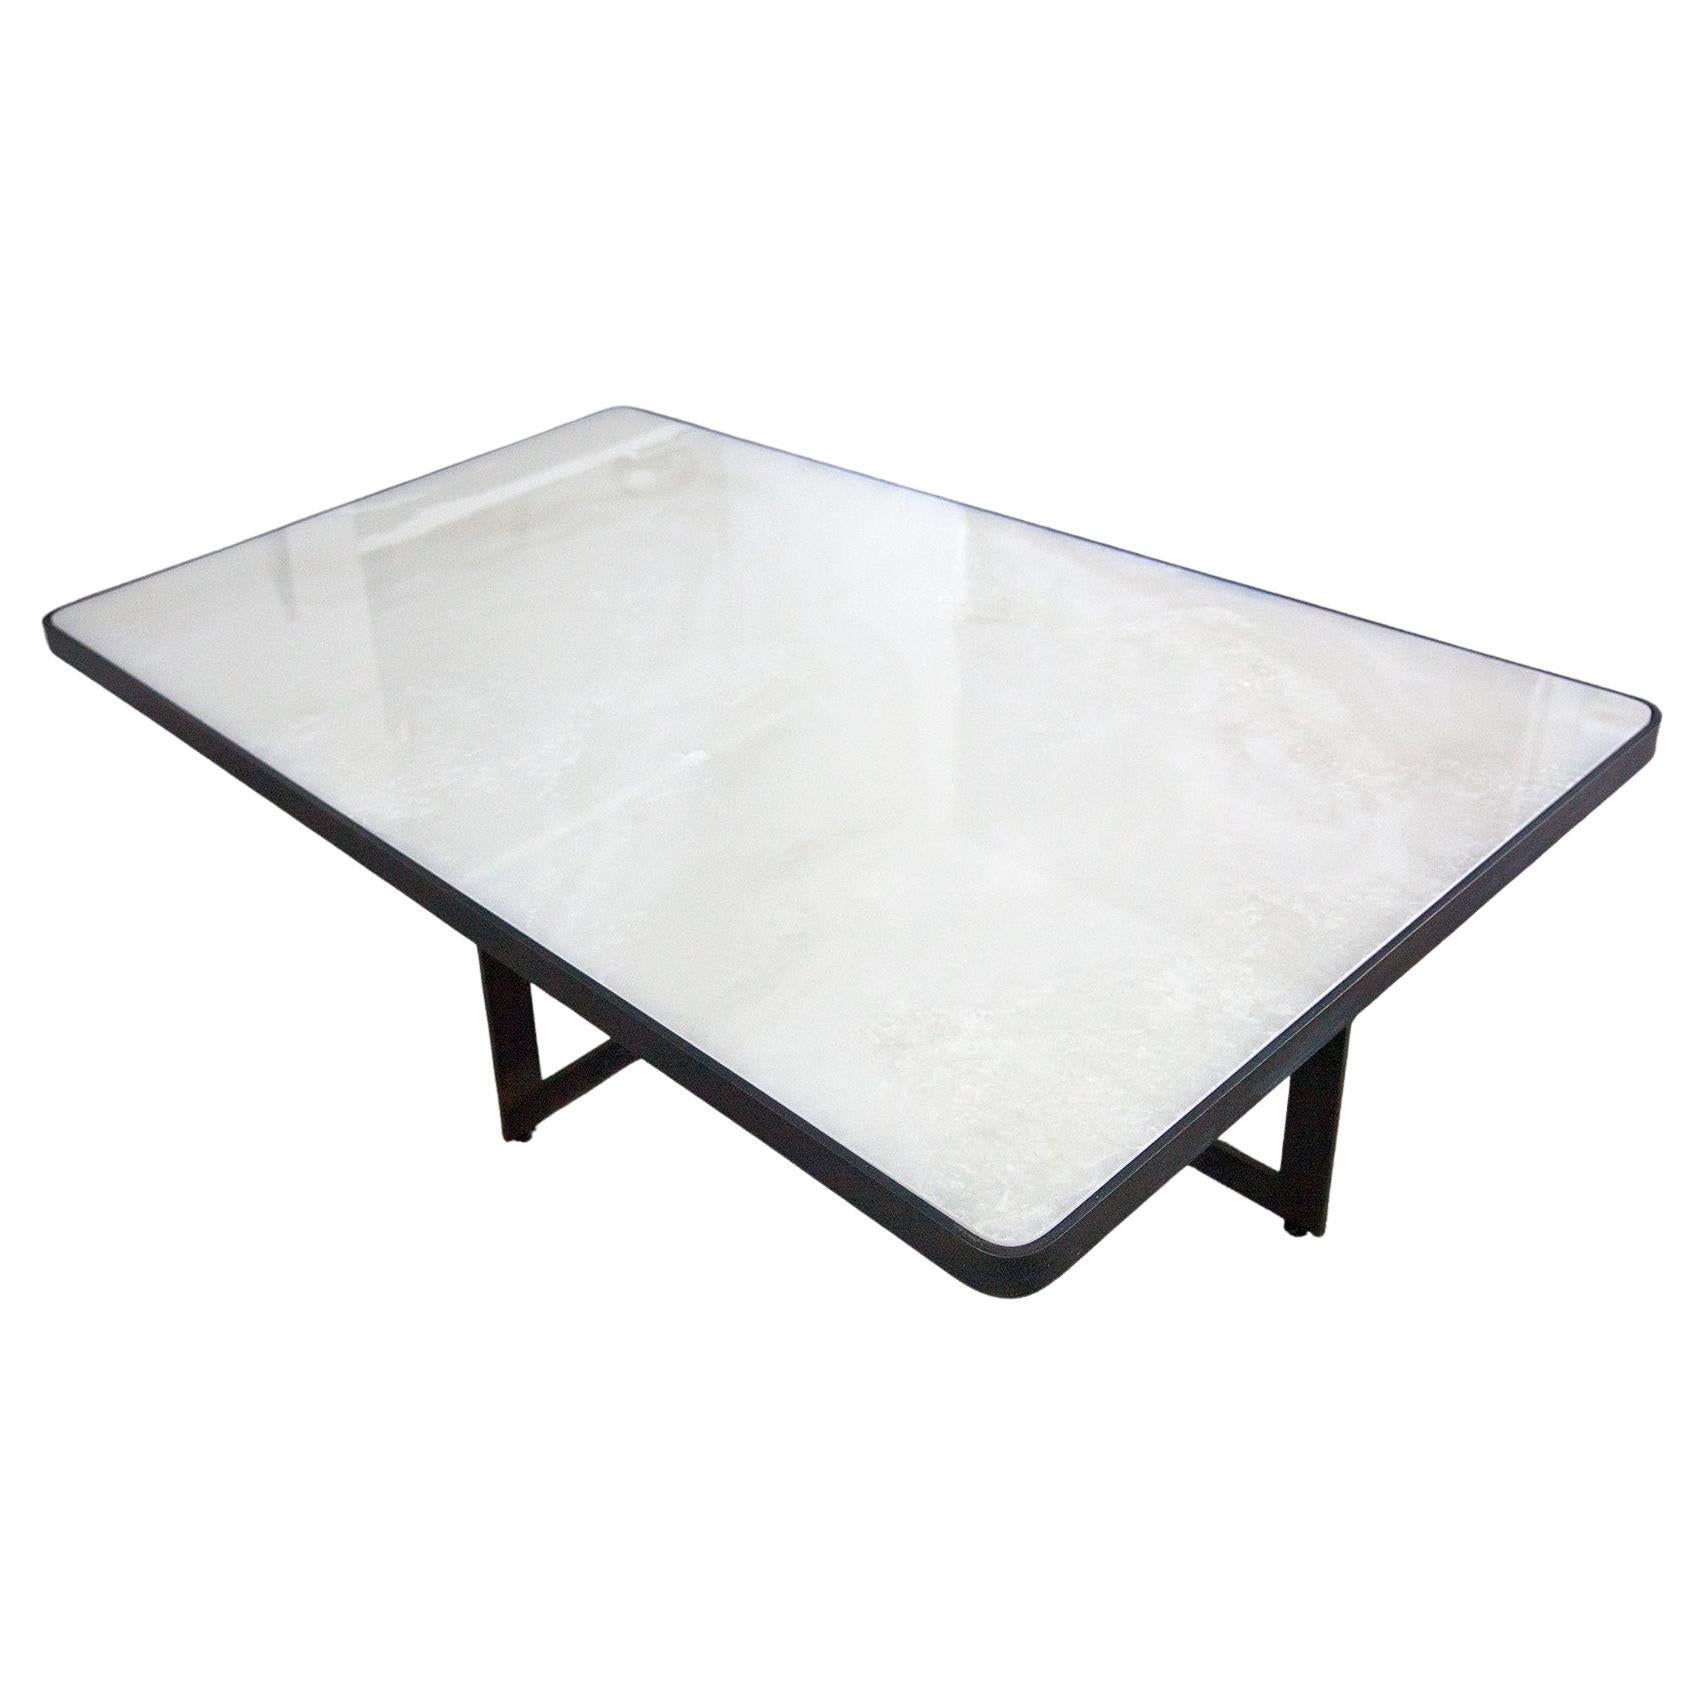 Cette superbe table basse moderne en quartzite blanche avec base en acier noirci reflète une juxtaposition frappante de matériaux et de formes. La lumineuse quartzite blanche lumineuse est enchâssée dans de l'acier moulé noirci avec une base croisée